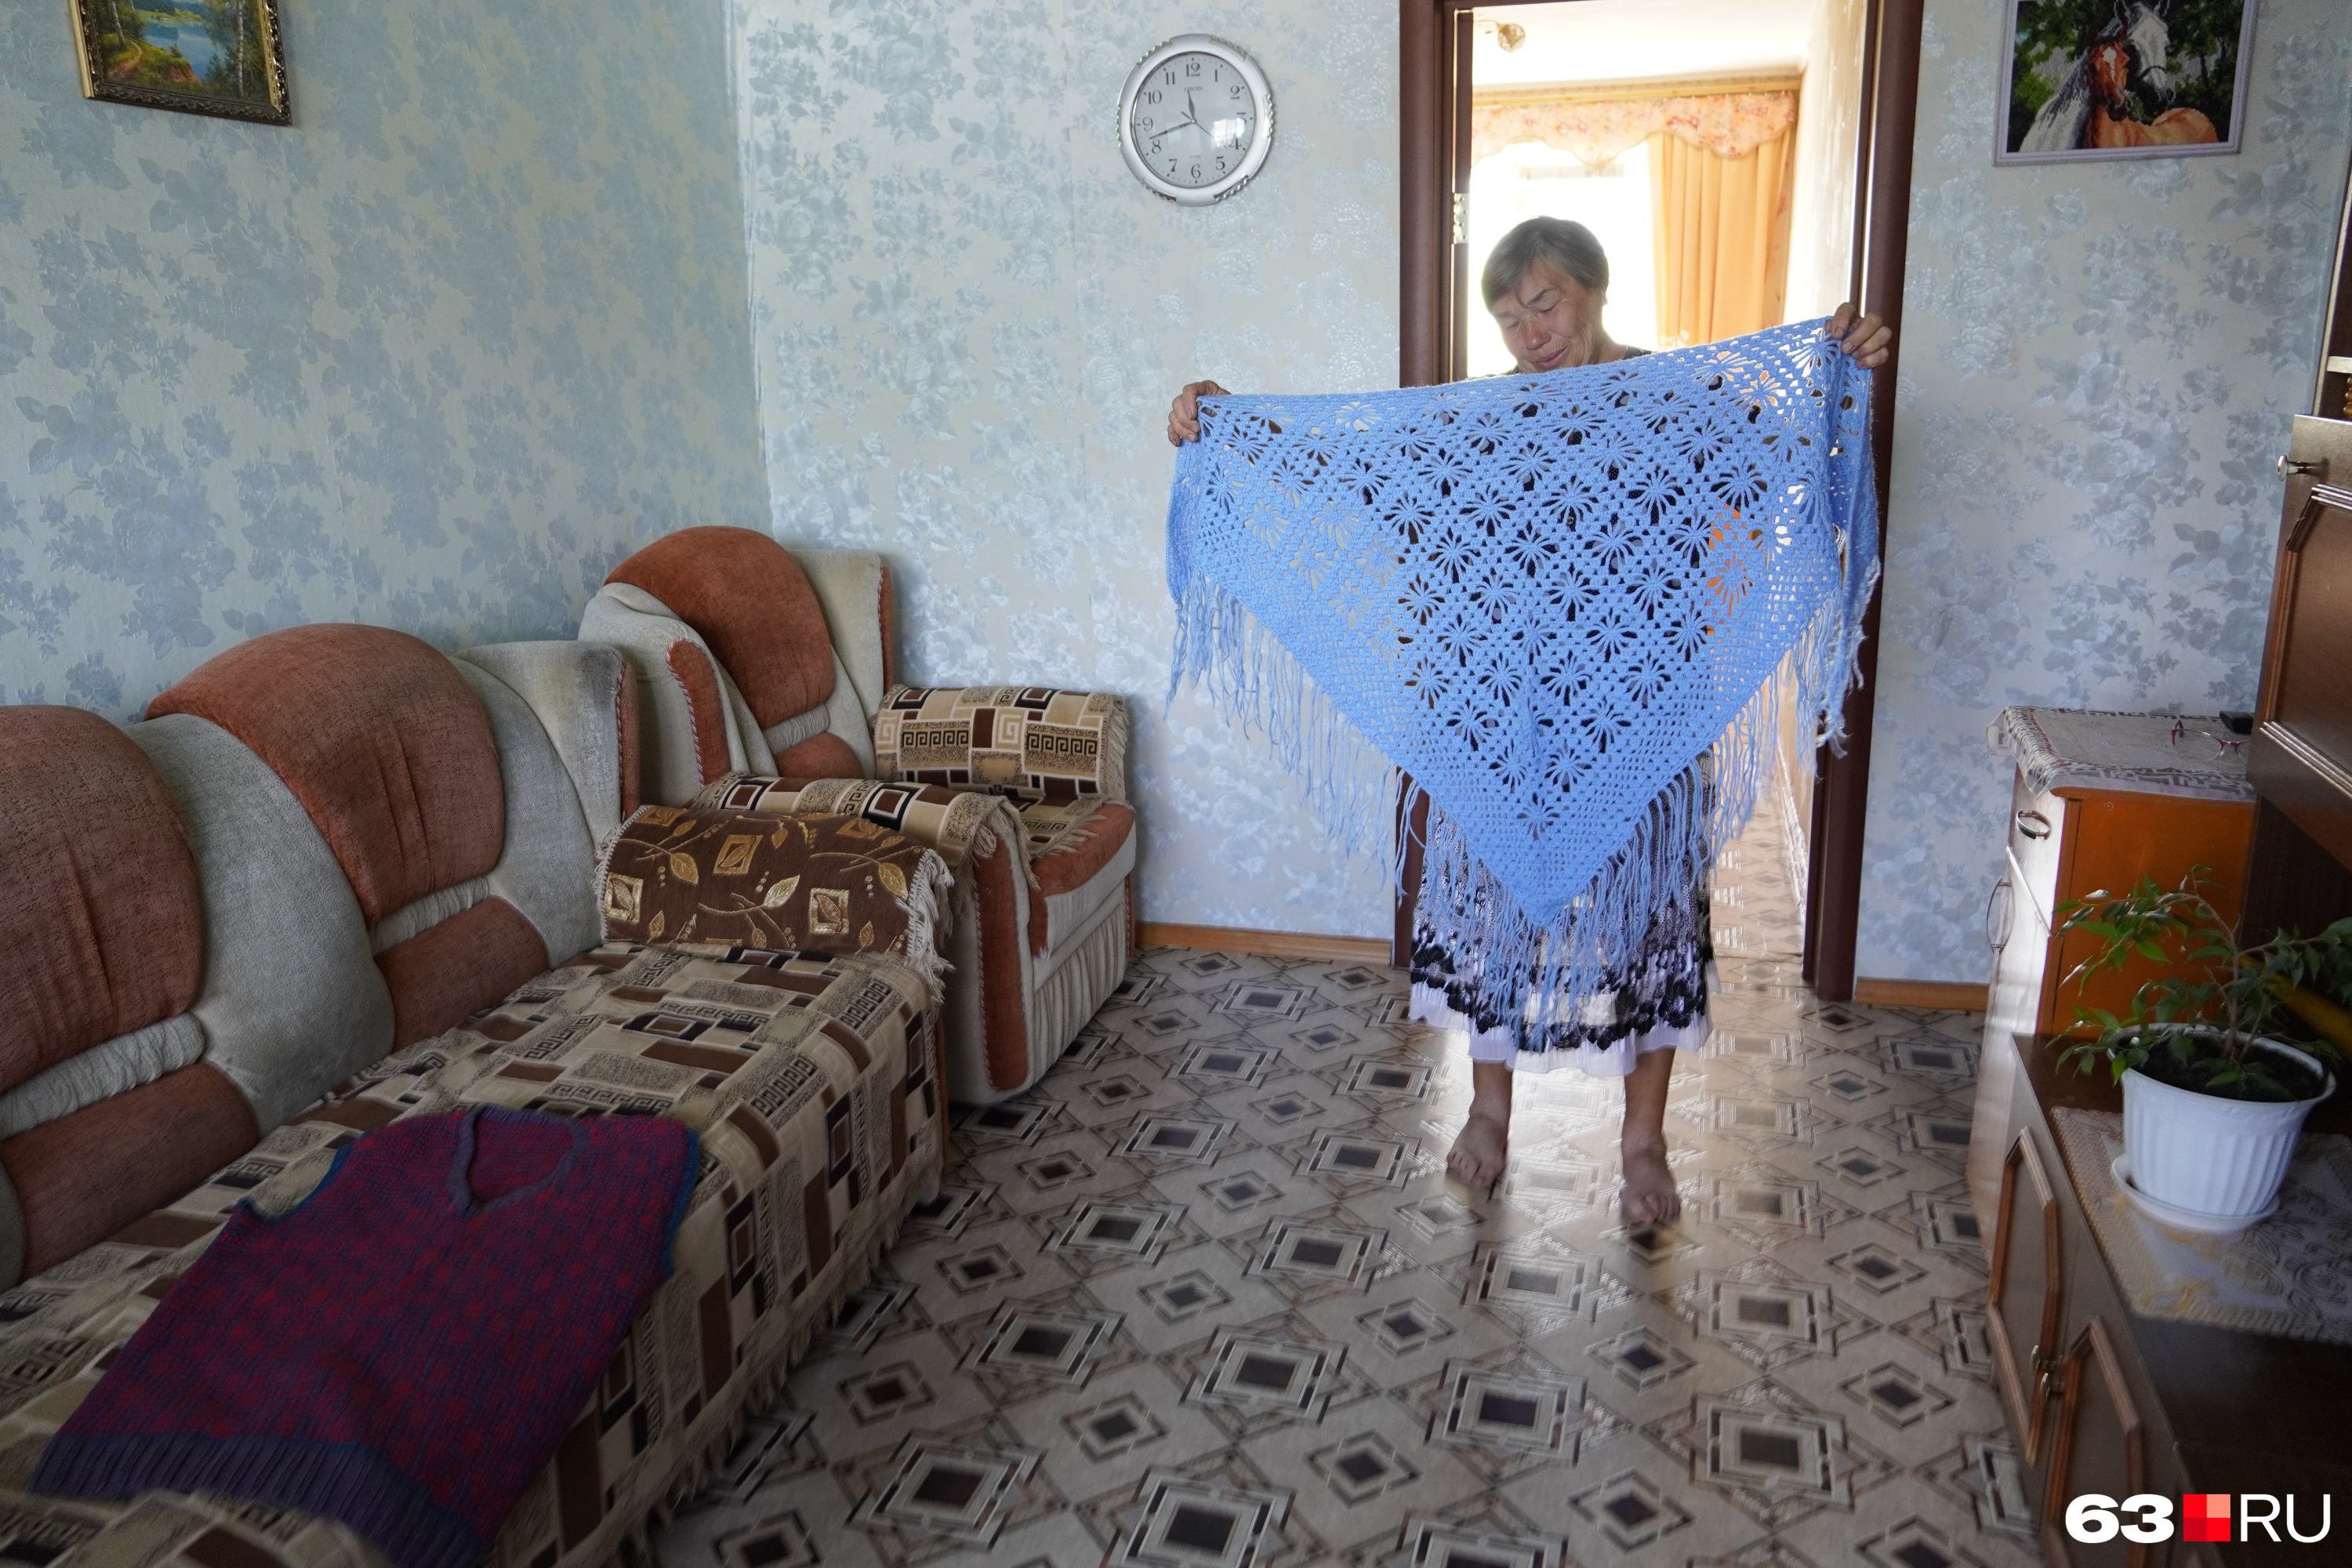 Бабушка Алены Антонина Ивановна показывает подарки внучки: шаль и жилетку дедушки